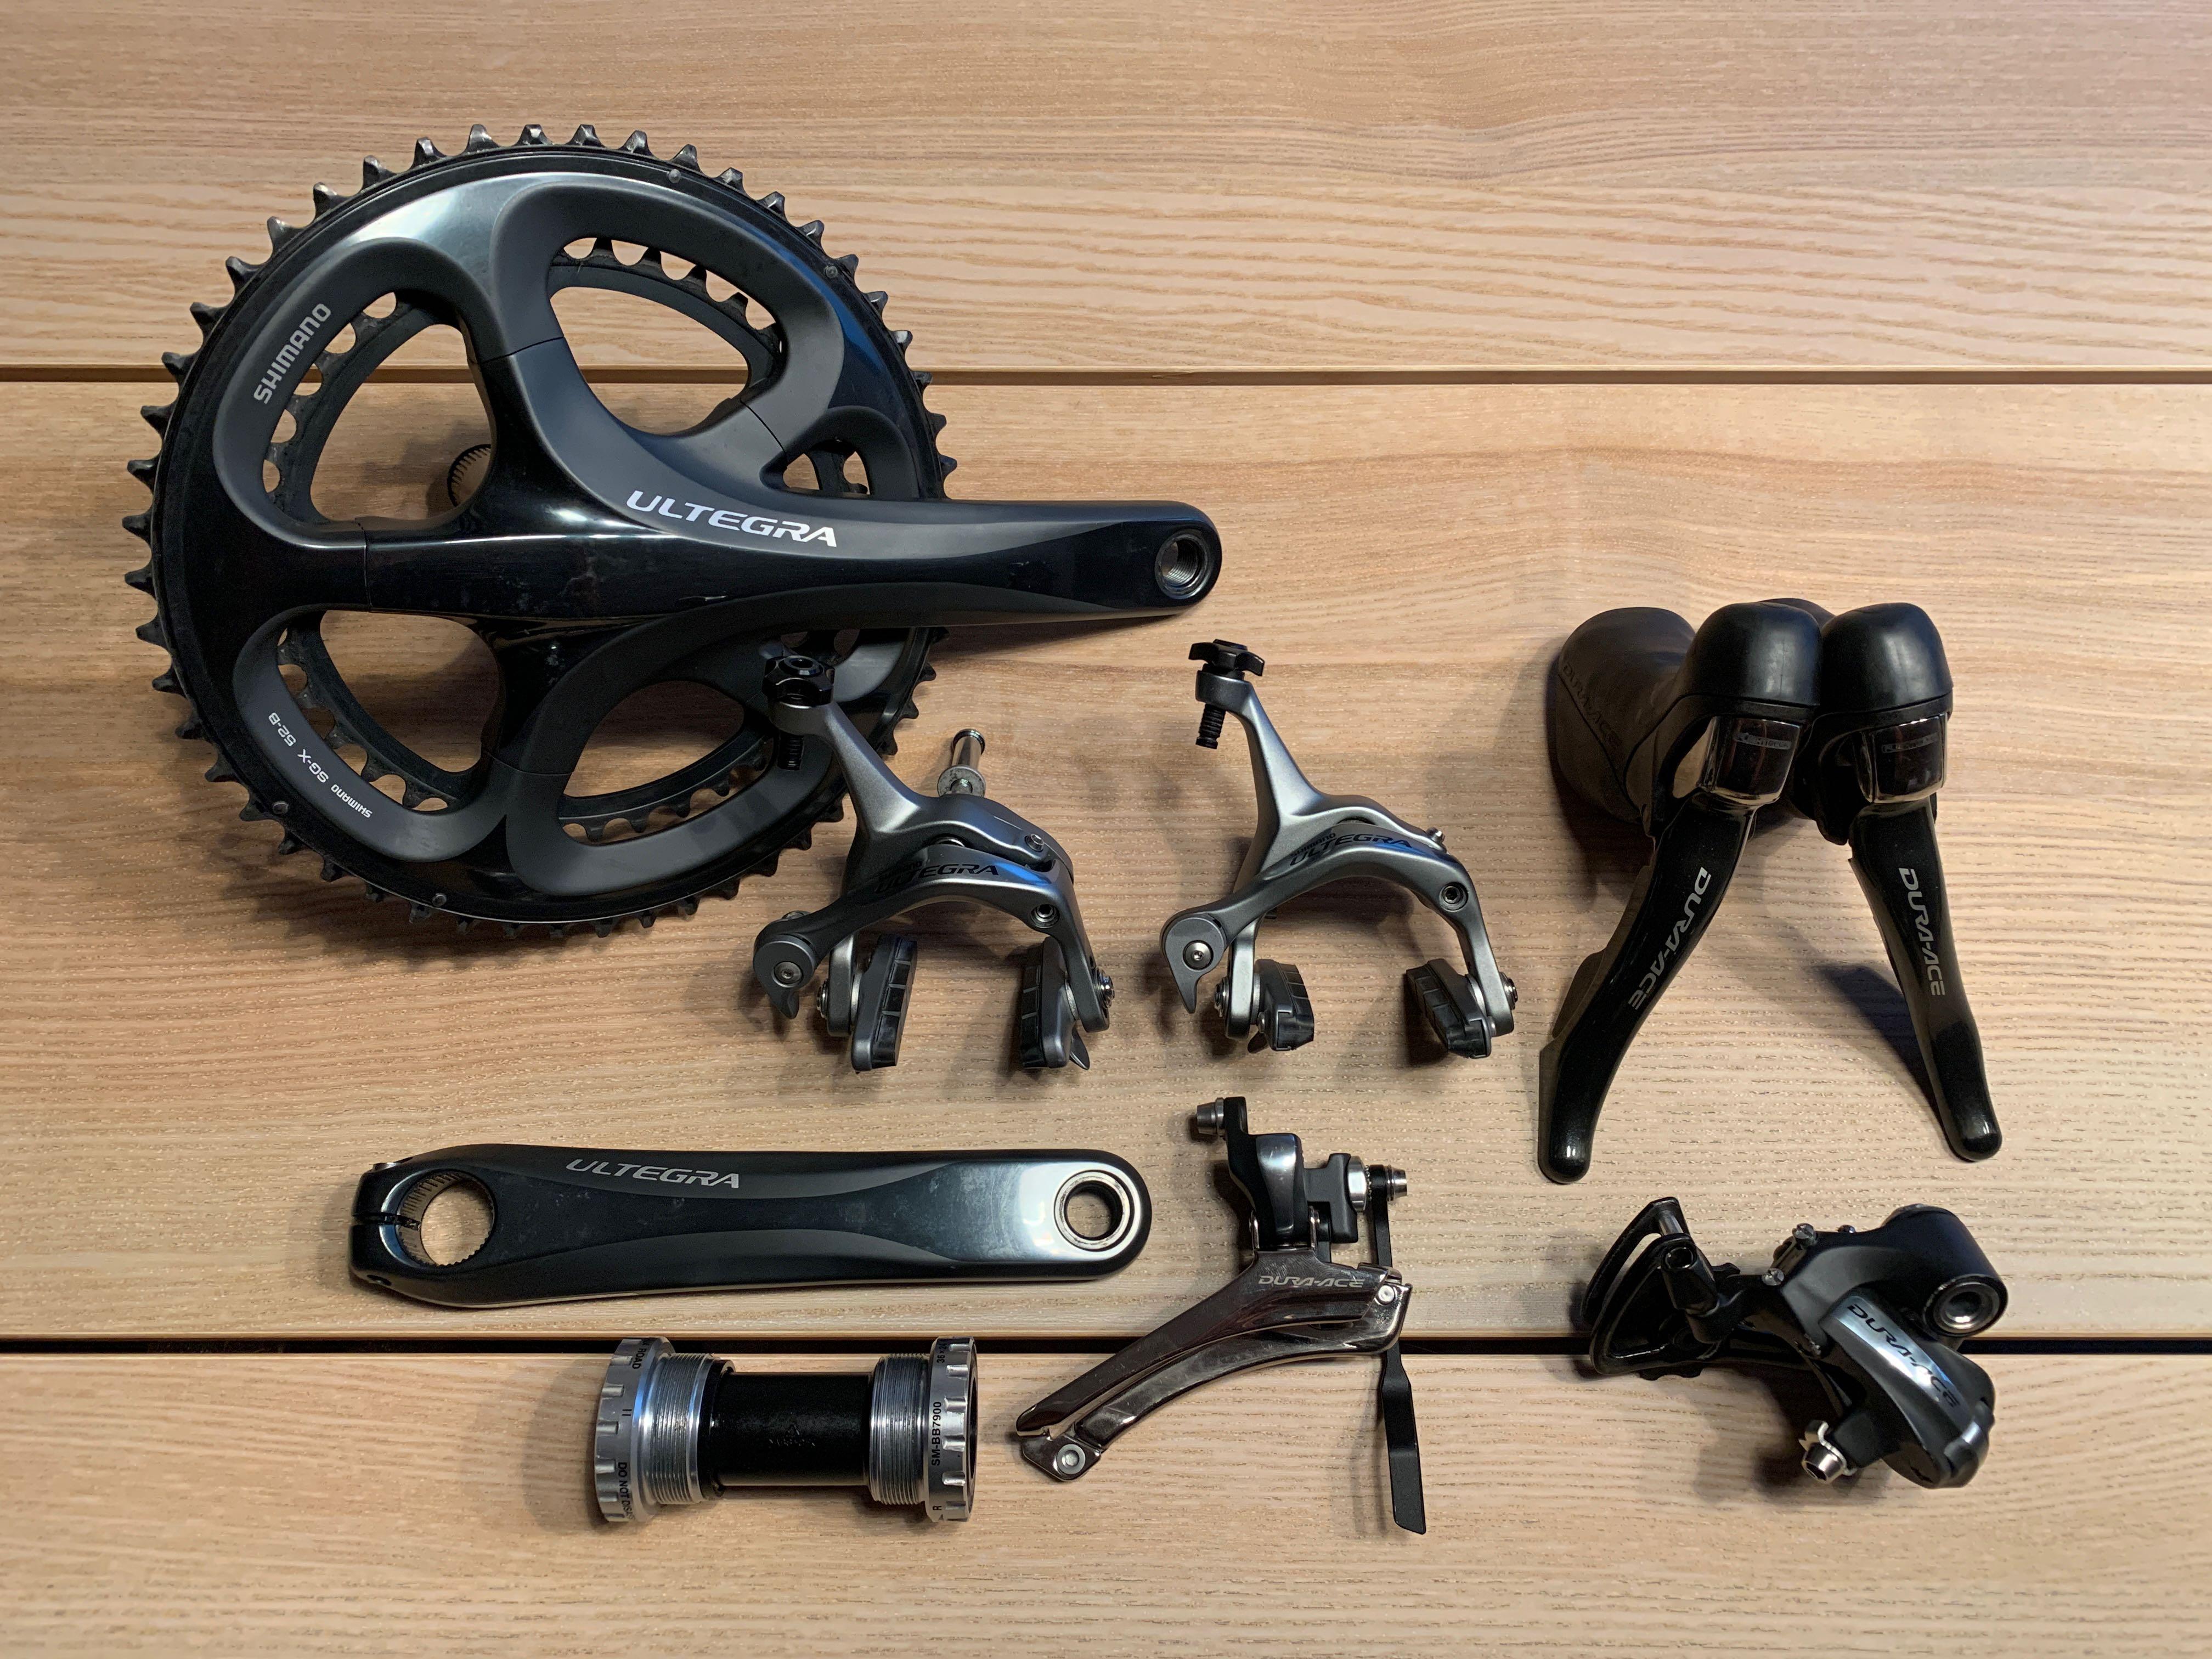 Onderzoek het Weven Walter Cunningham Shimano DA7900/Ultegra 6700 Groupset - Partial, Sports Equipment, Bicycles  & Parts, Parts & Accessories on Carousell